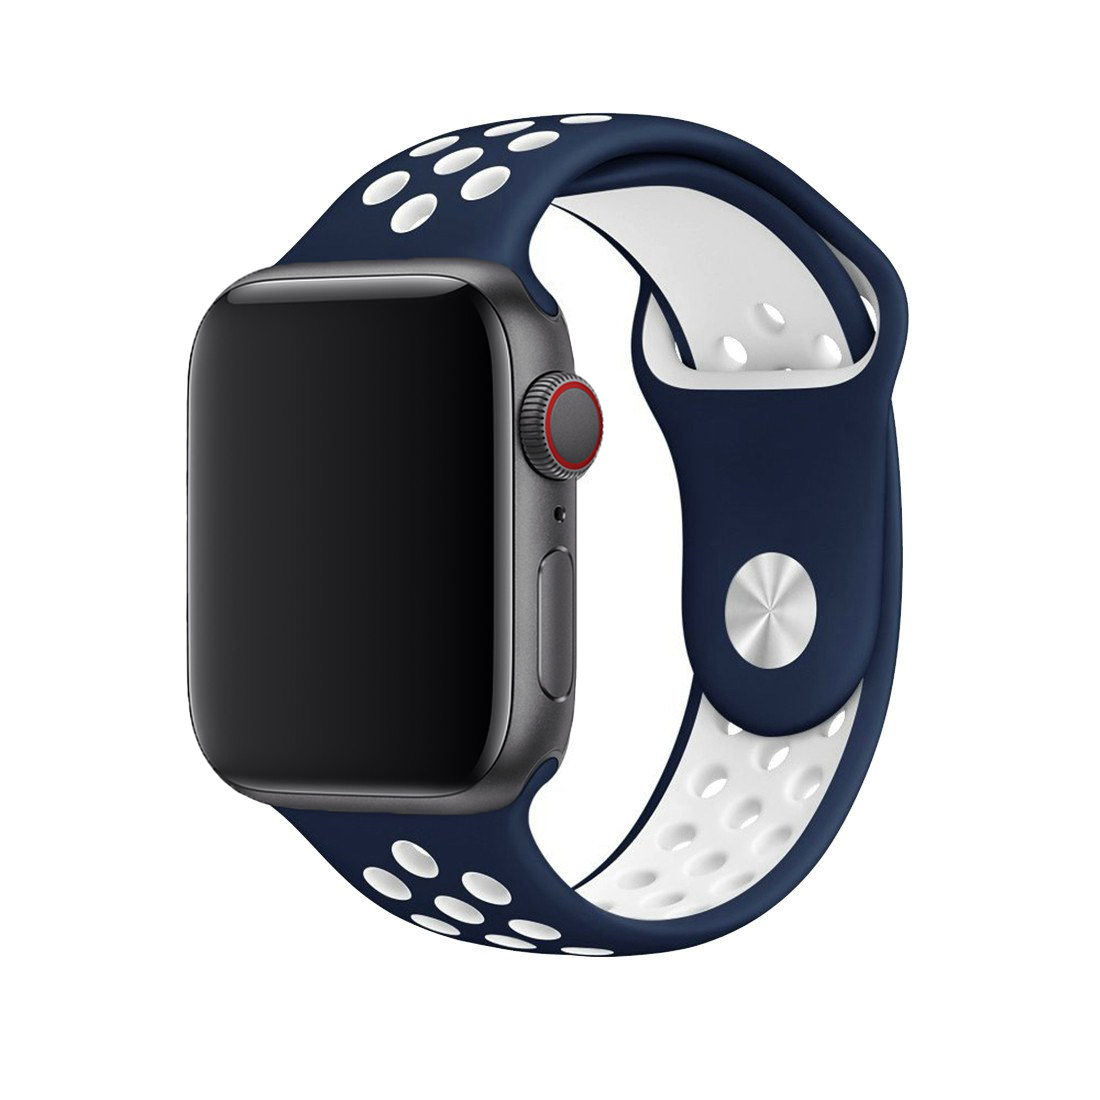 Apple watch 44 мм ремешки. Эппл вотч спортивный ремешок. Ремешок для Apple watch 44mm Nike. Эппл вотч 1. Черный силиконовый ремешок АПЛ вотч.